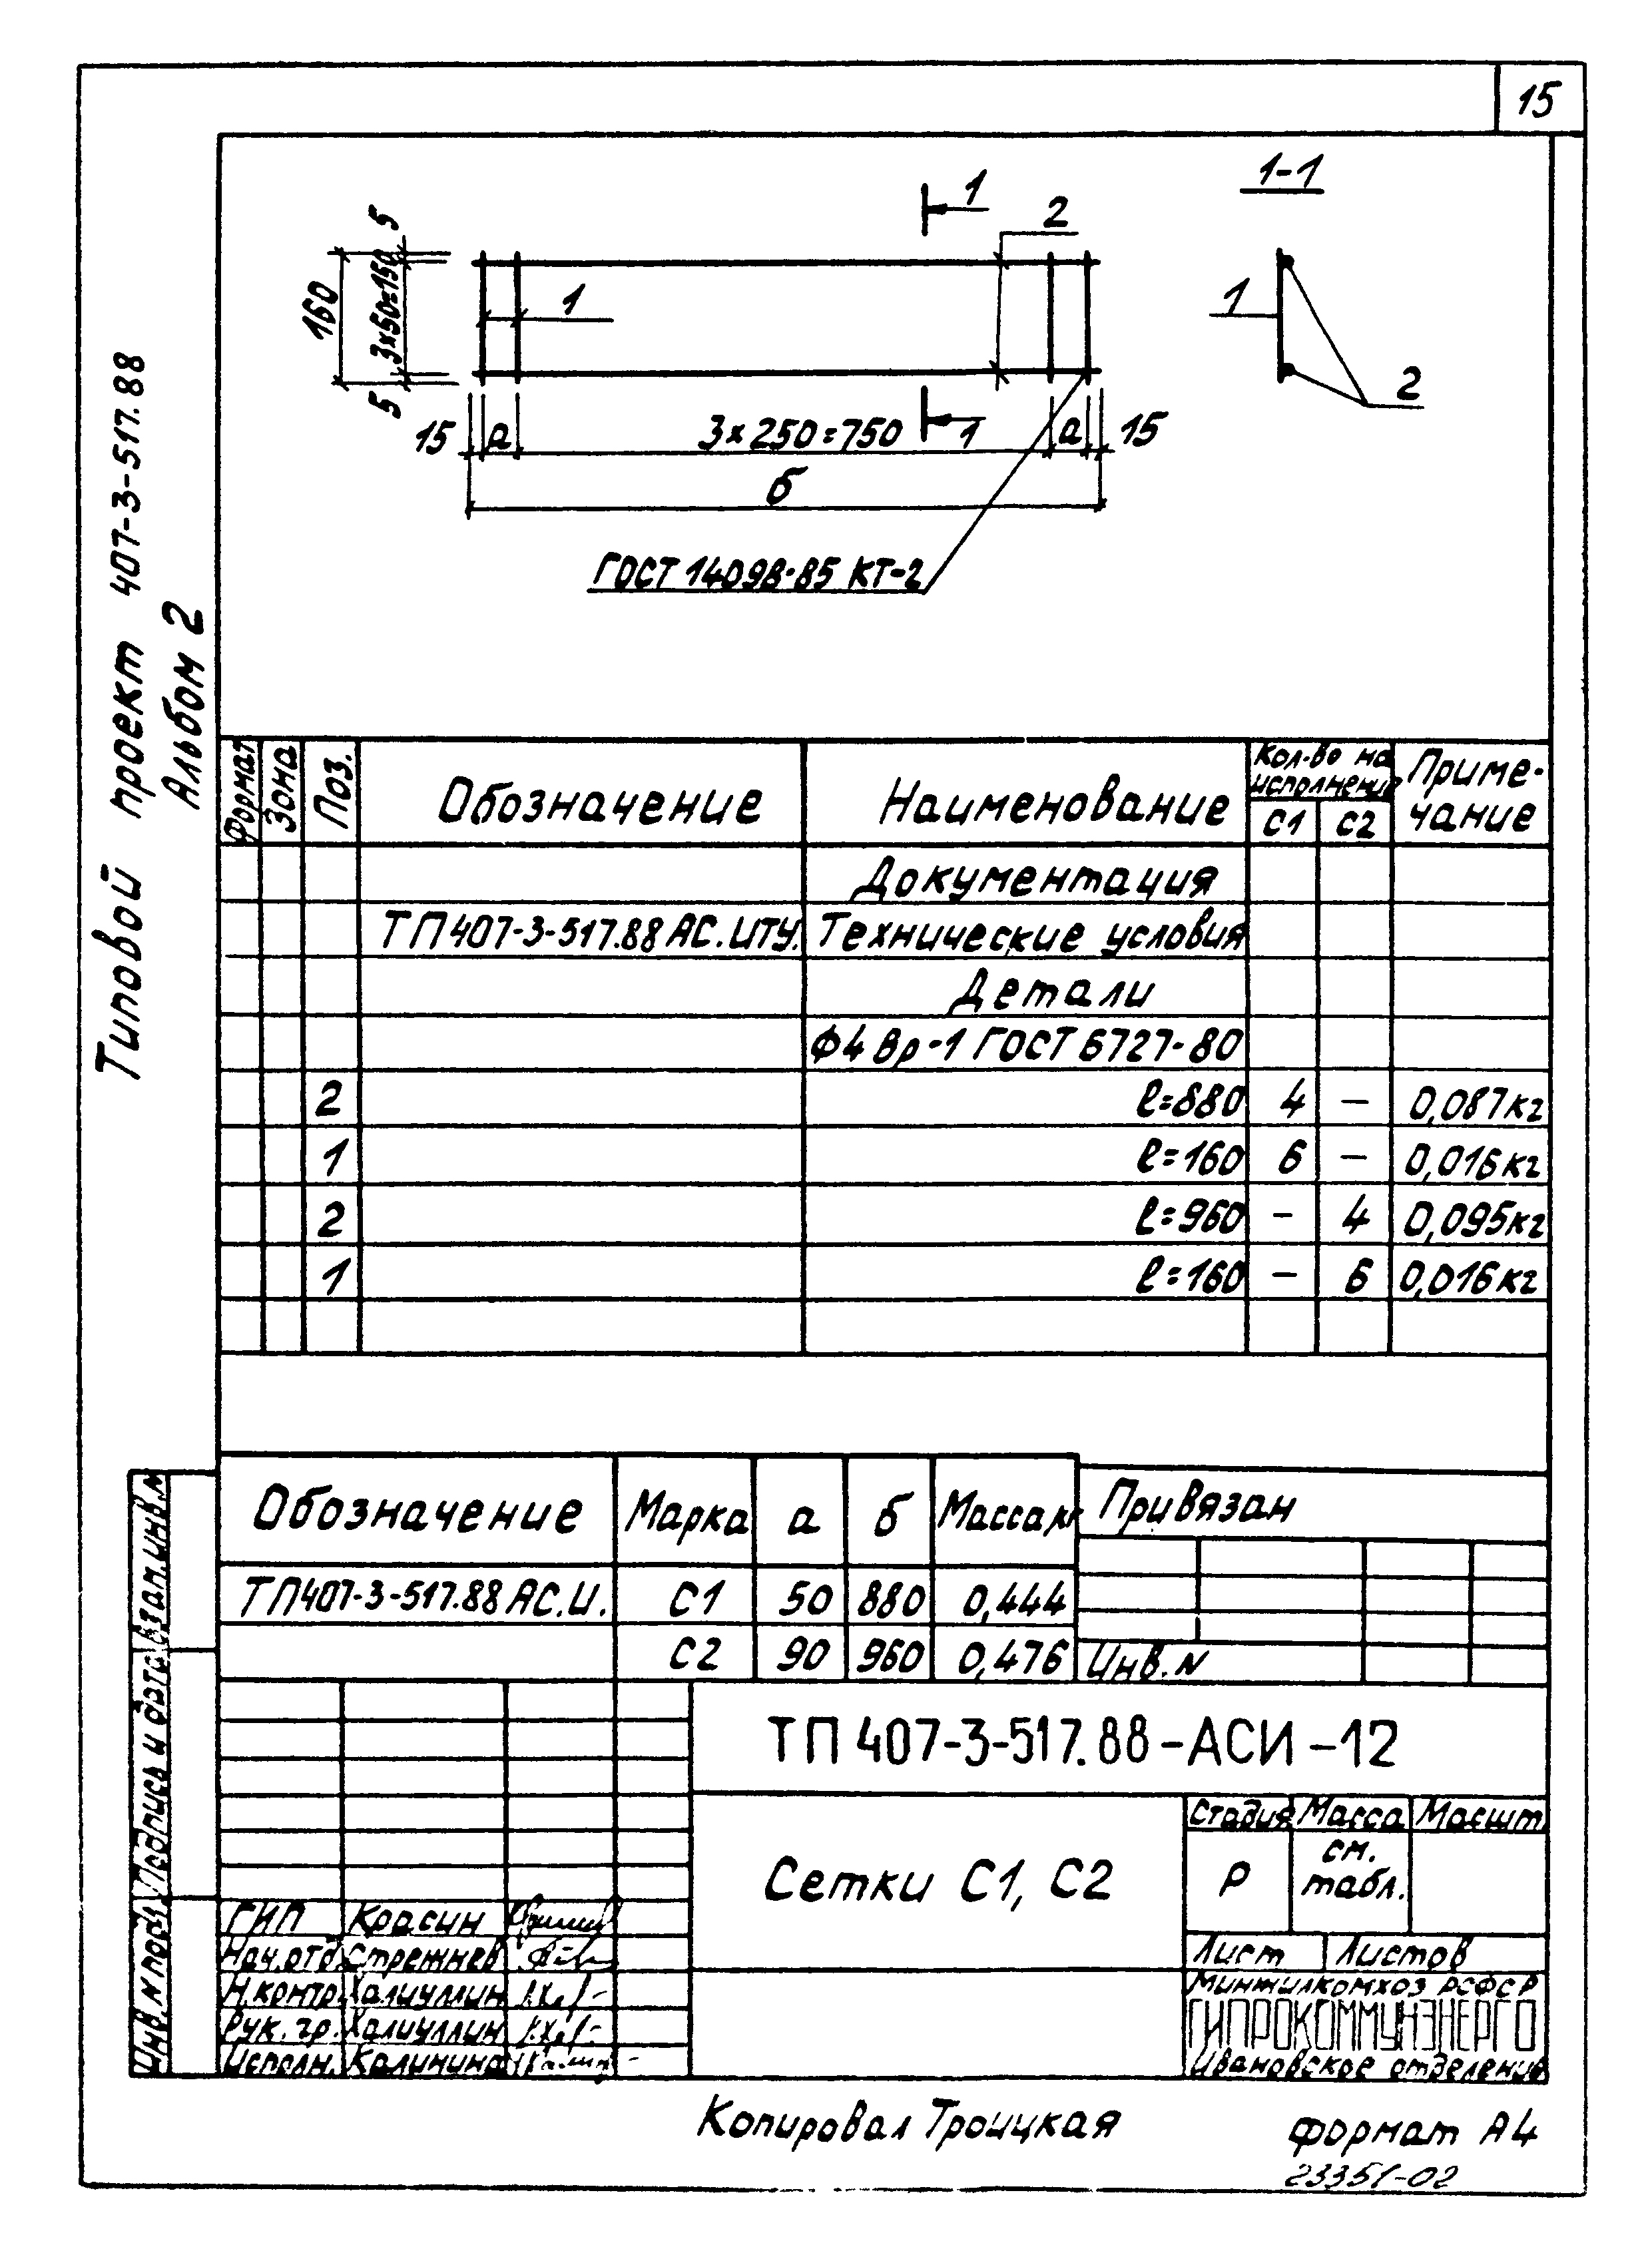 Типовой проект 407-3-516.88